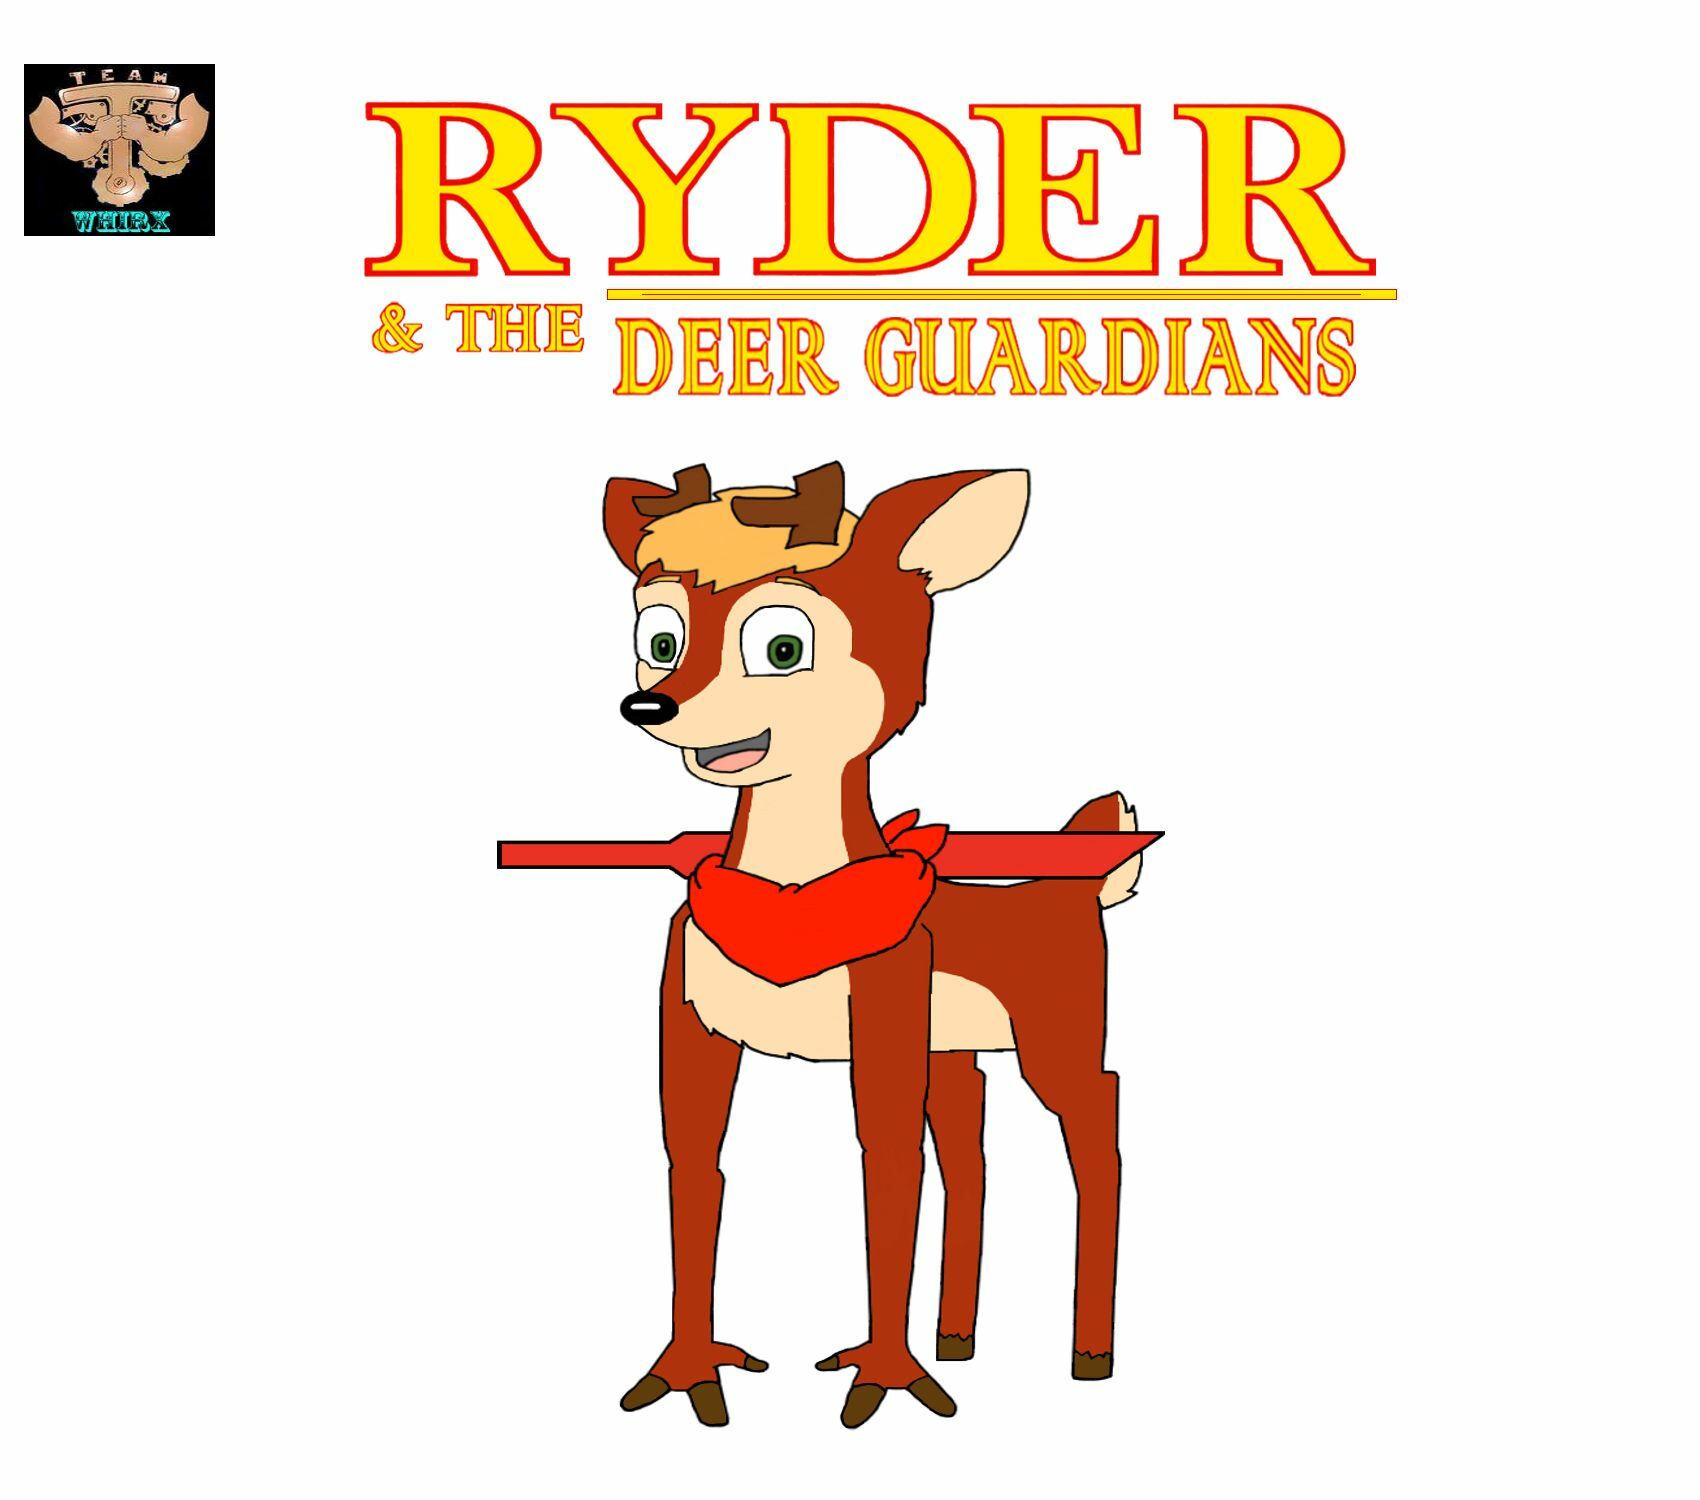 RYDER & THE DEER GUARDIANS